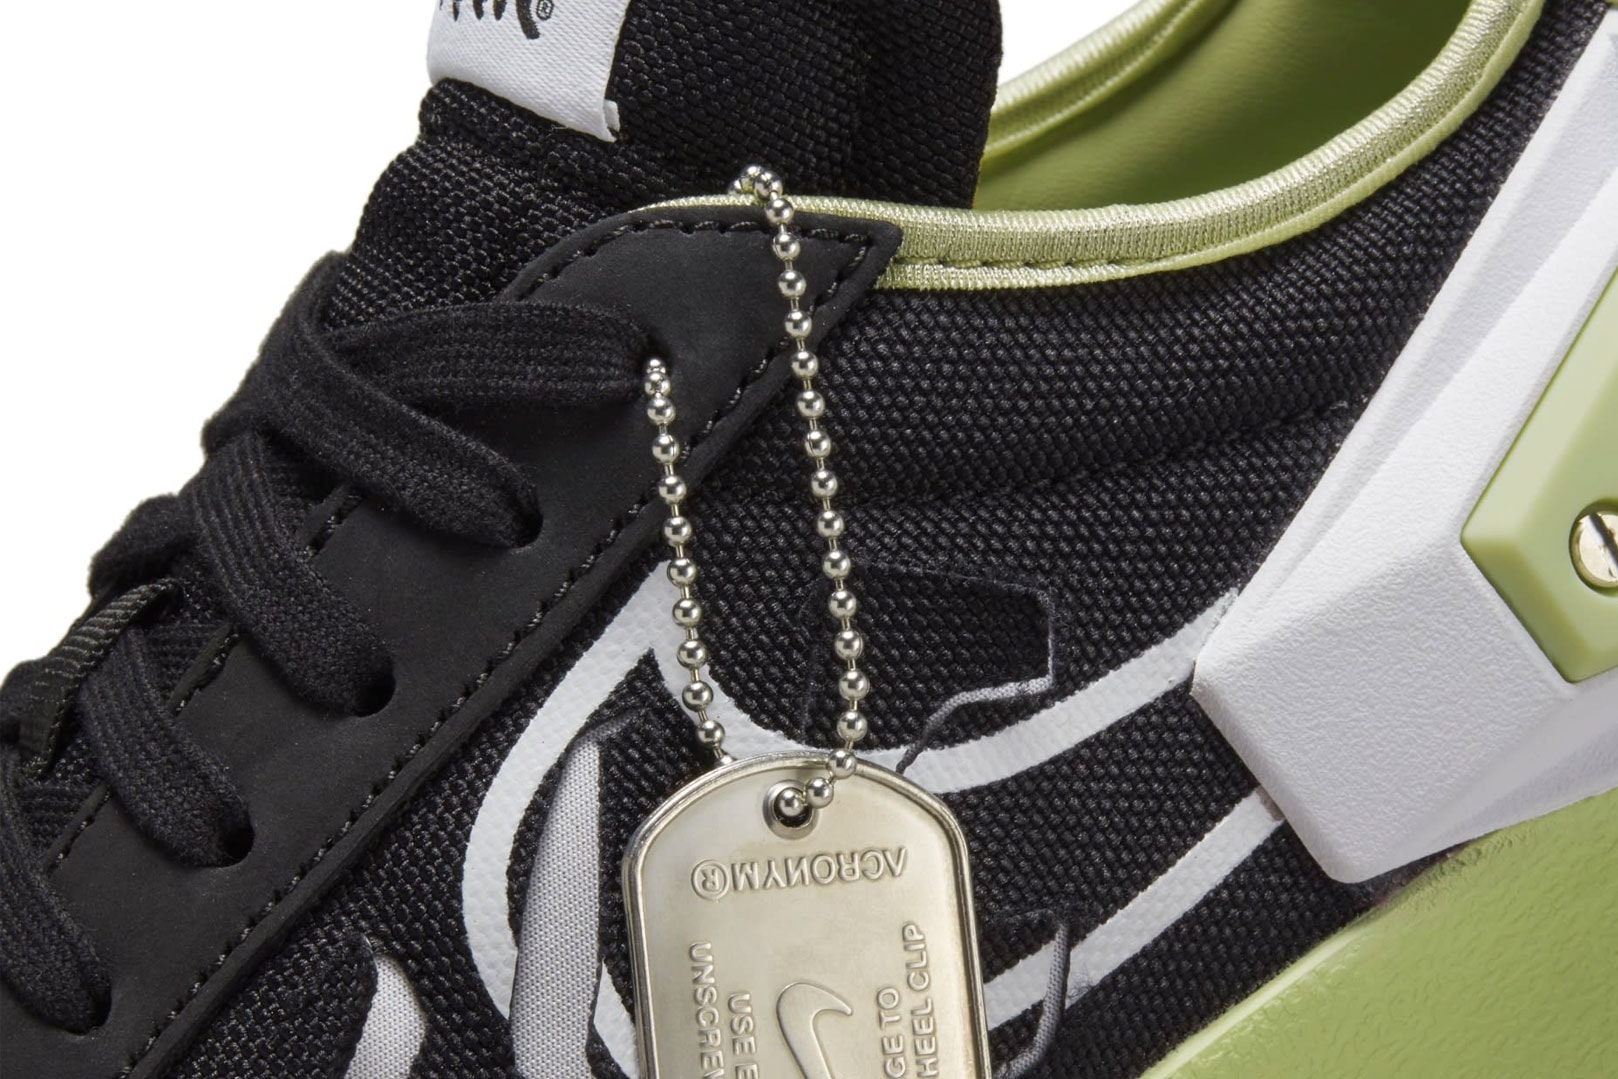 ACRONYM x Nike Blazer Low 聯乘鞋款官方圖輯正式發佈